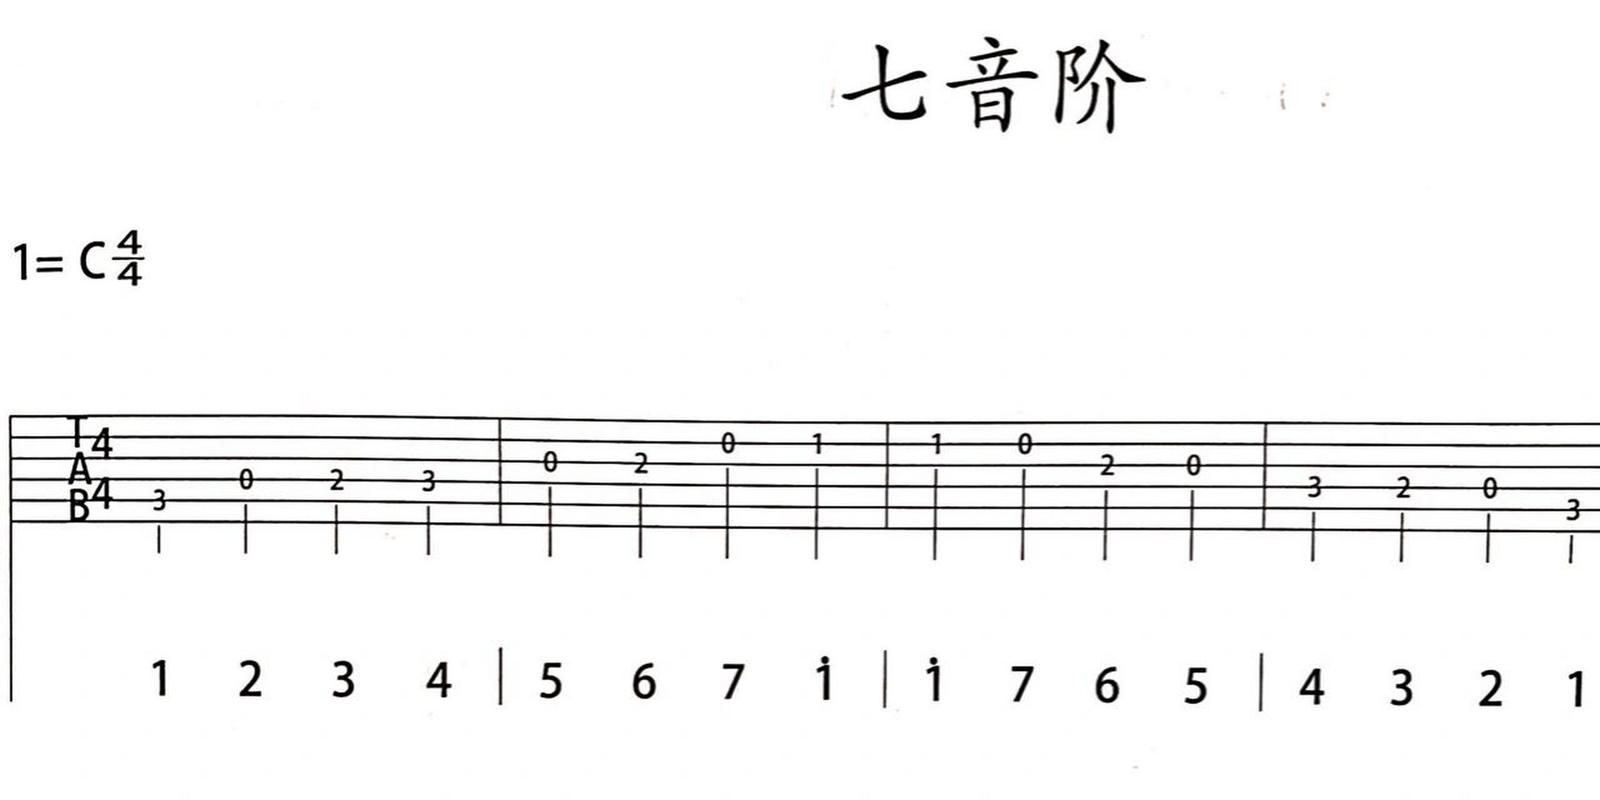 吉他纯干货(六线谱及指法,七音阶) (图1)六线谱的指法 (图2)六线谱